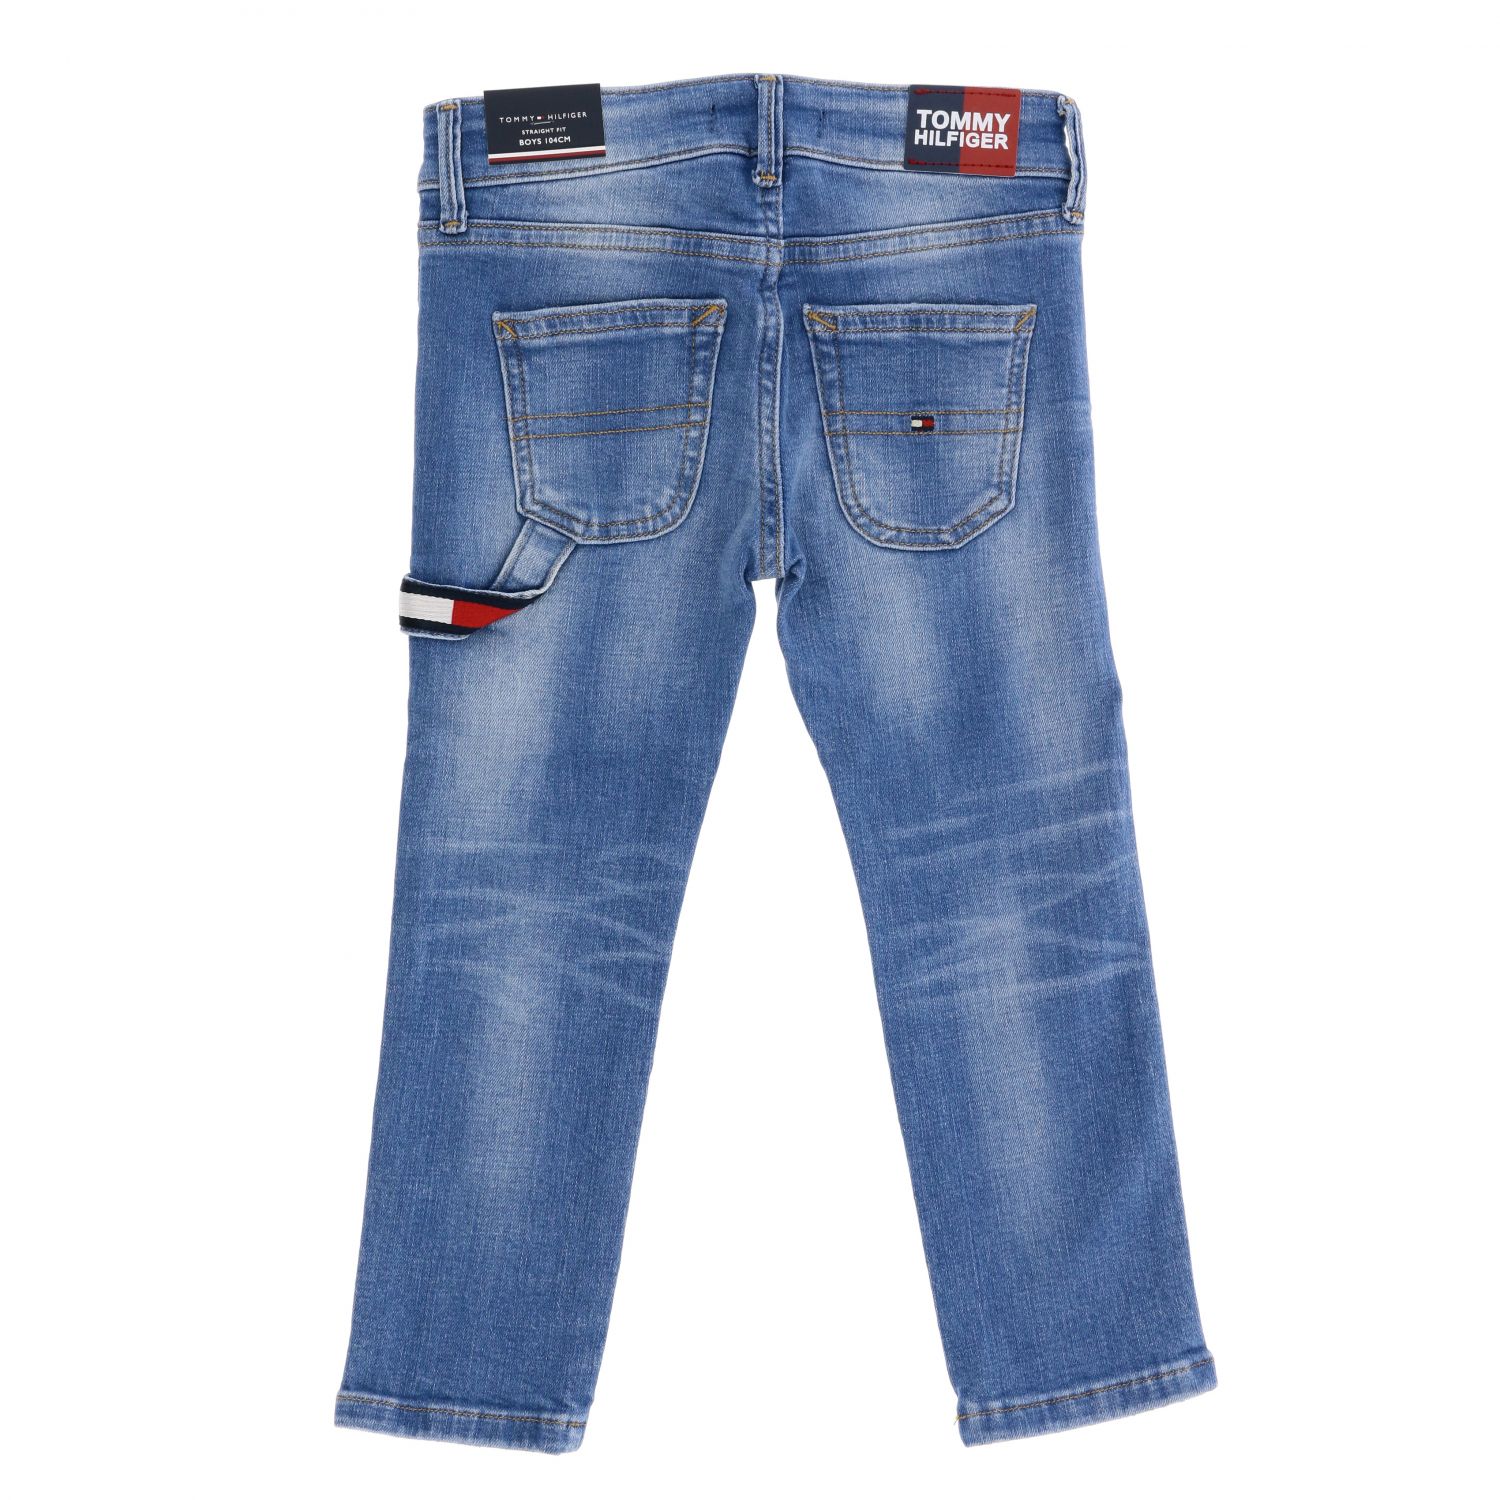 Evolueren Koningin instinct Tommy Hilfiger Outlet: jeans in used denim - Denim | Tommy Hilfiger jeans  KB0KB05383 online on GIGLIO.COM